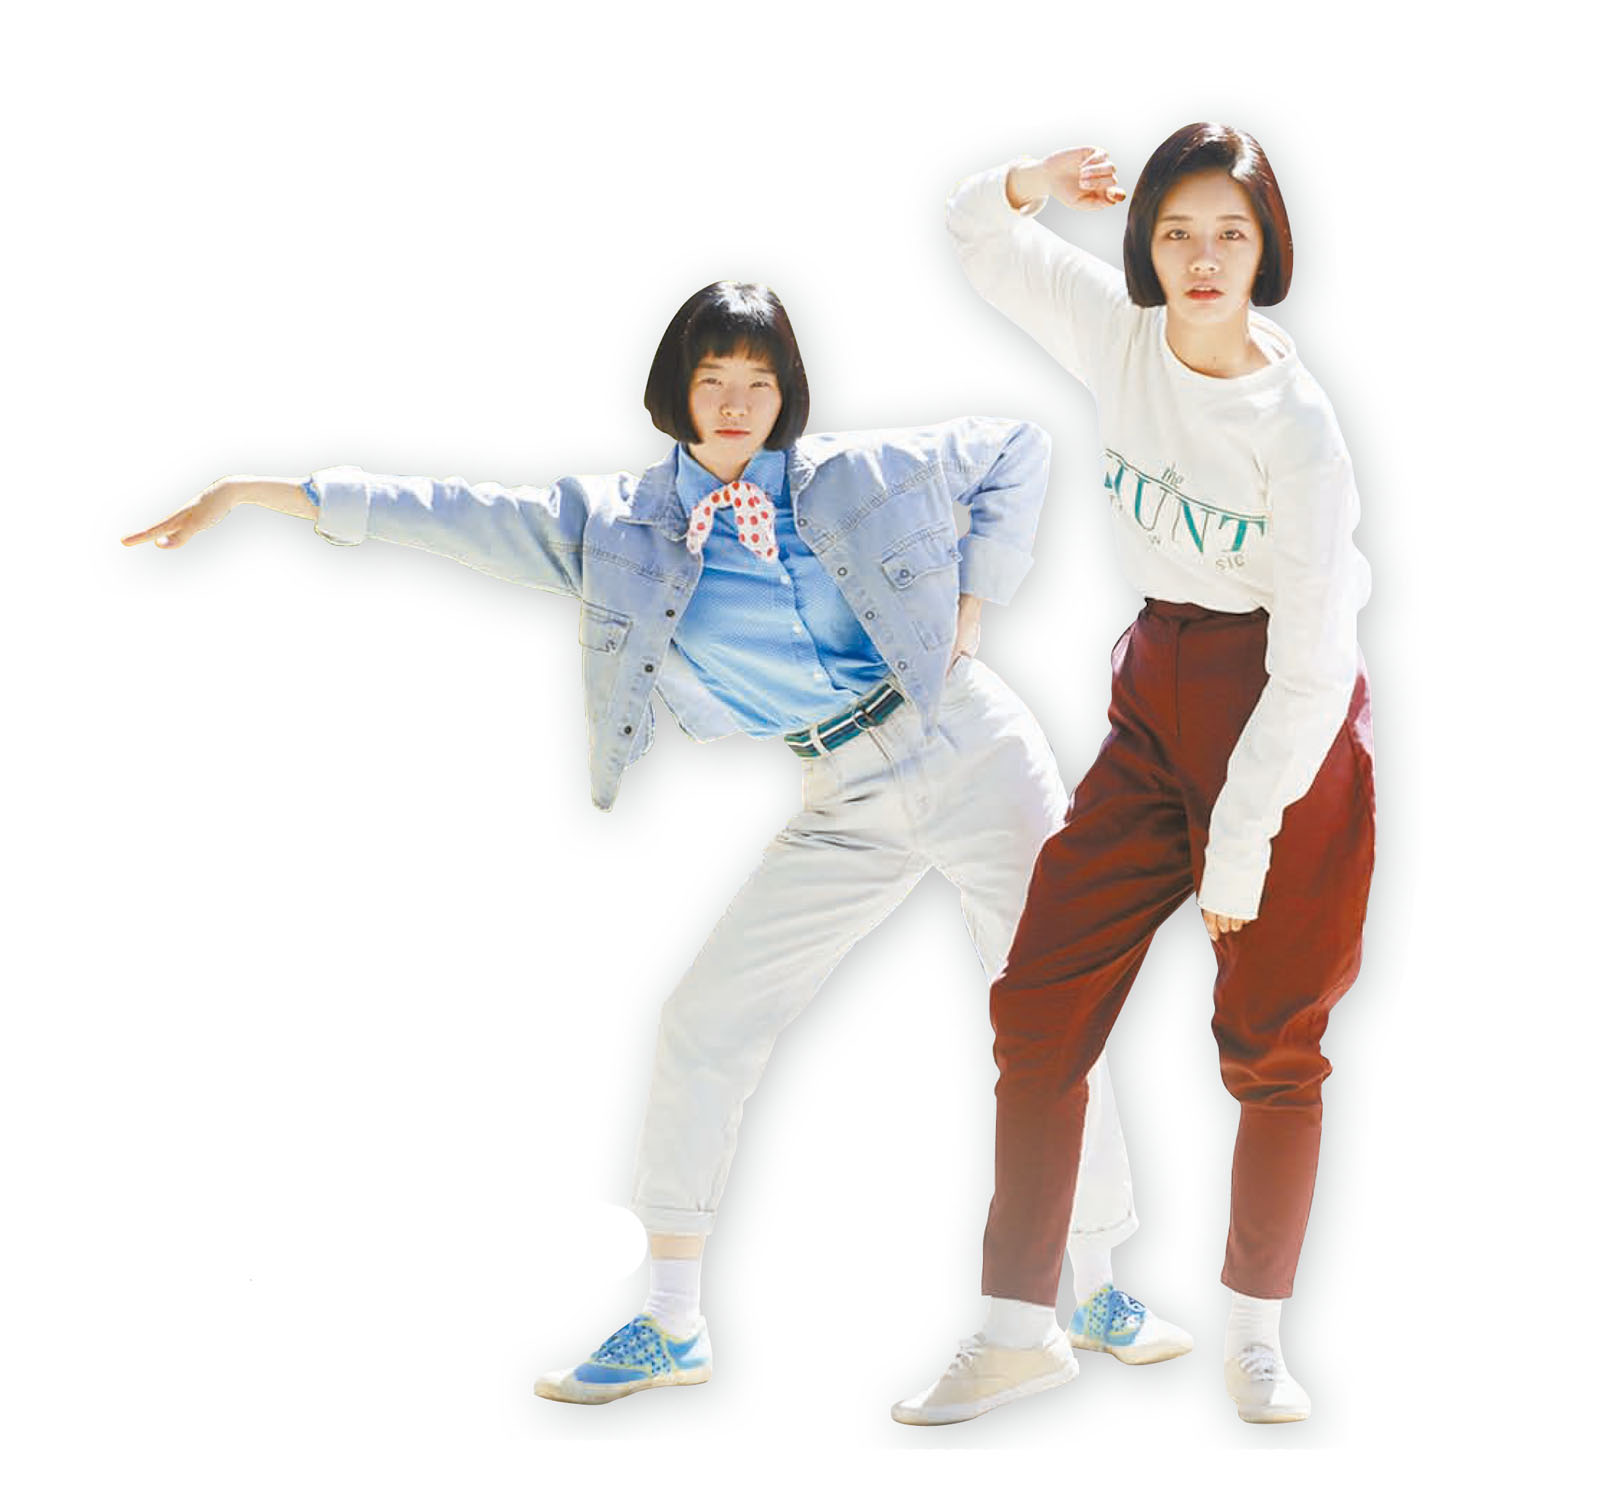 청재킷과 청바지를 매치하는 ‘청청’ 패션, 영문 로고가 찍힌 티셔츠와 디스코바지.